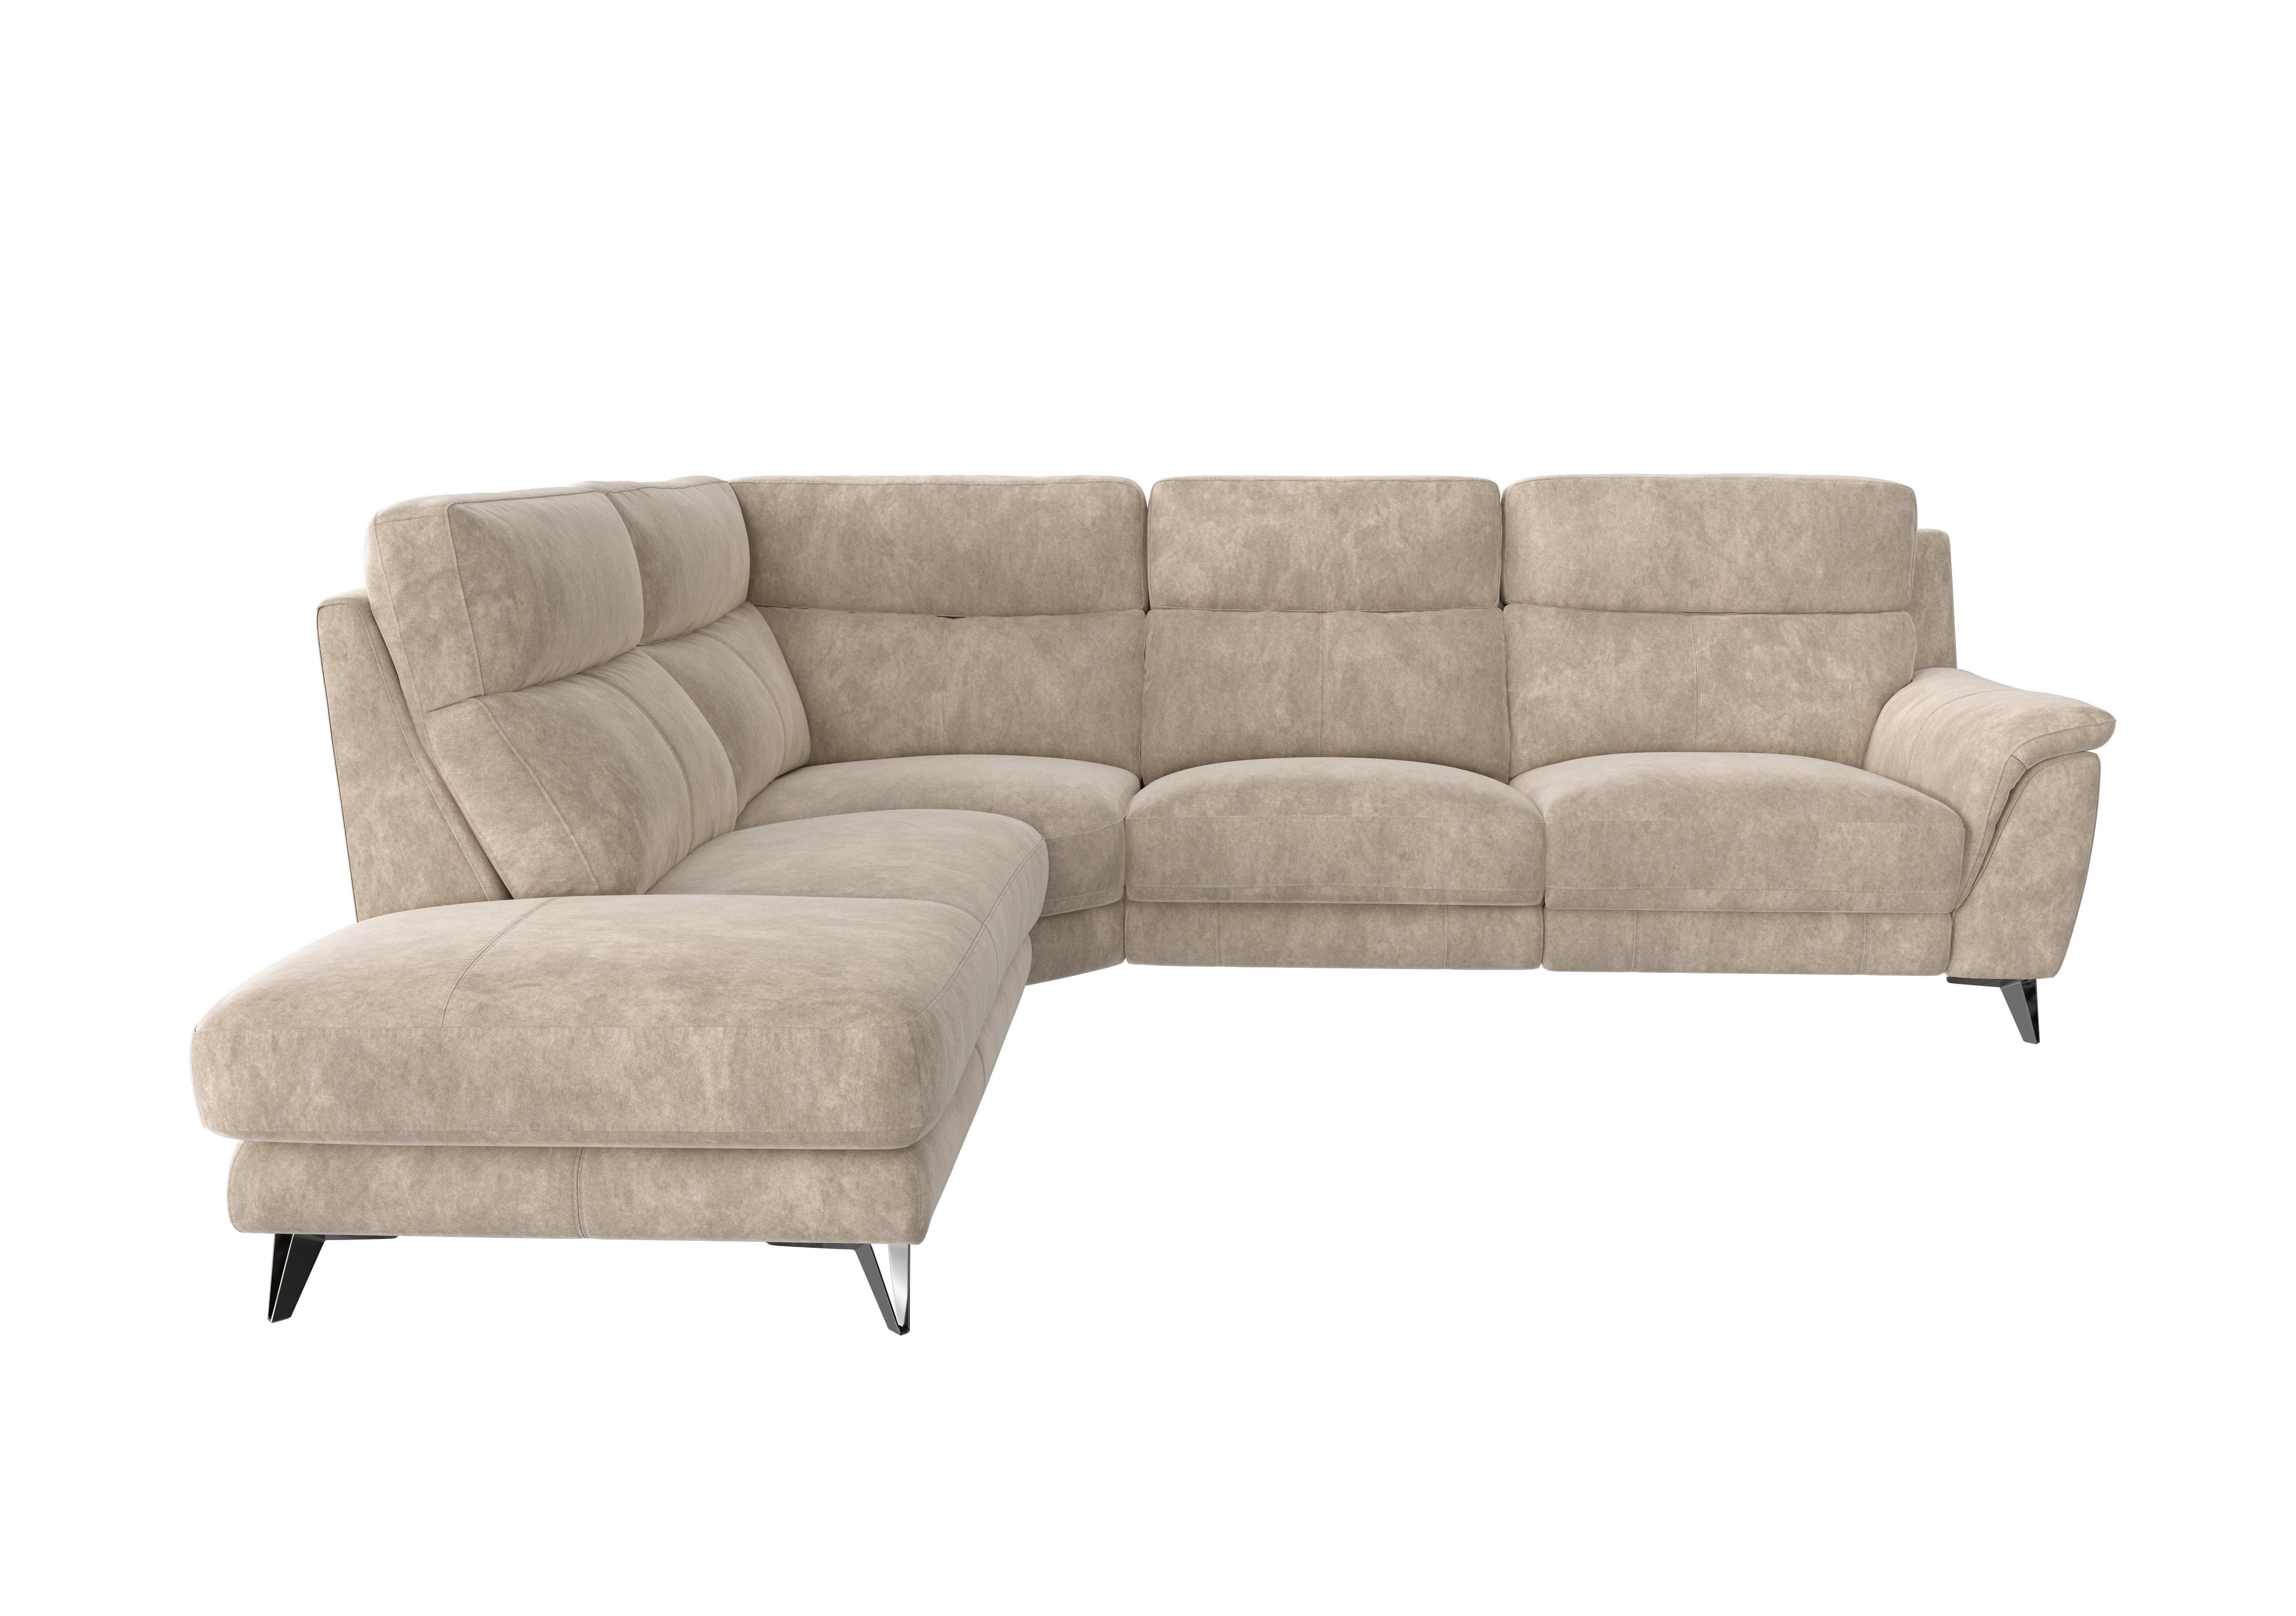 Contempo 3 Seater Chaise End Fabric Sofa in Bfa-Bnn-R26 Fv2 Cream on Furniture Village